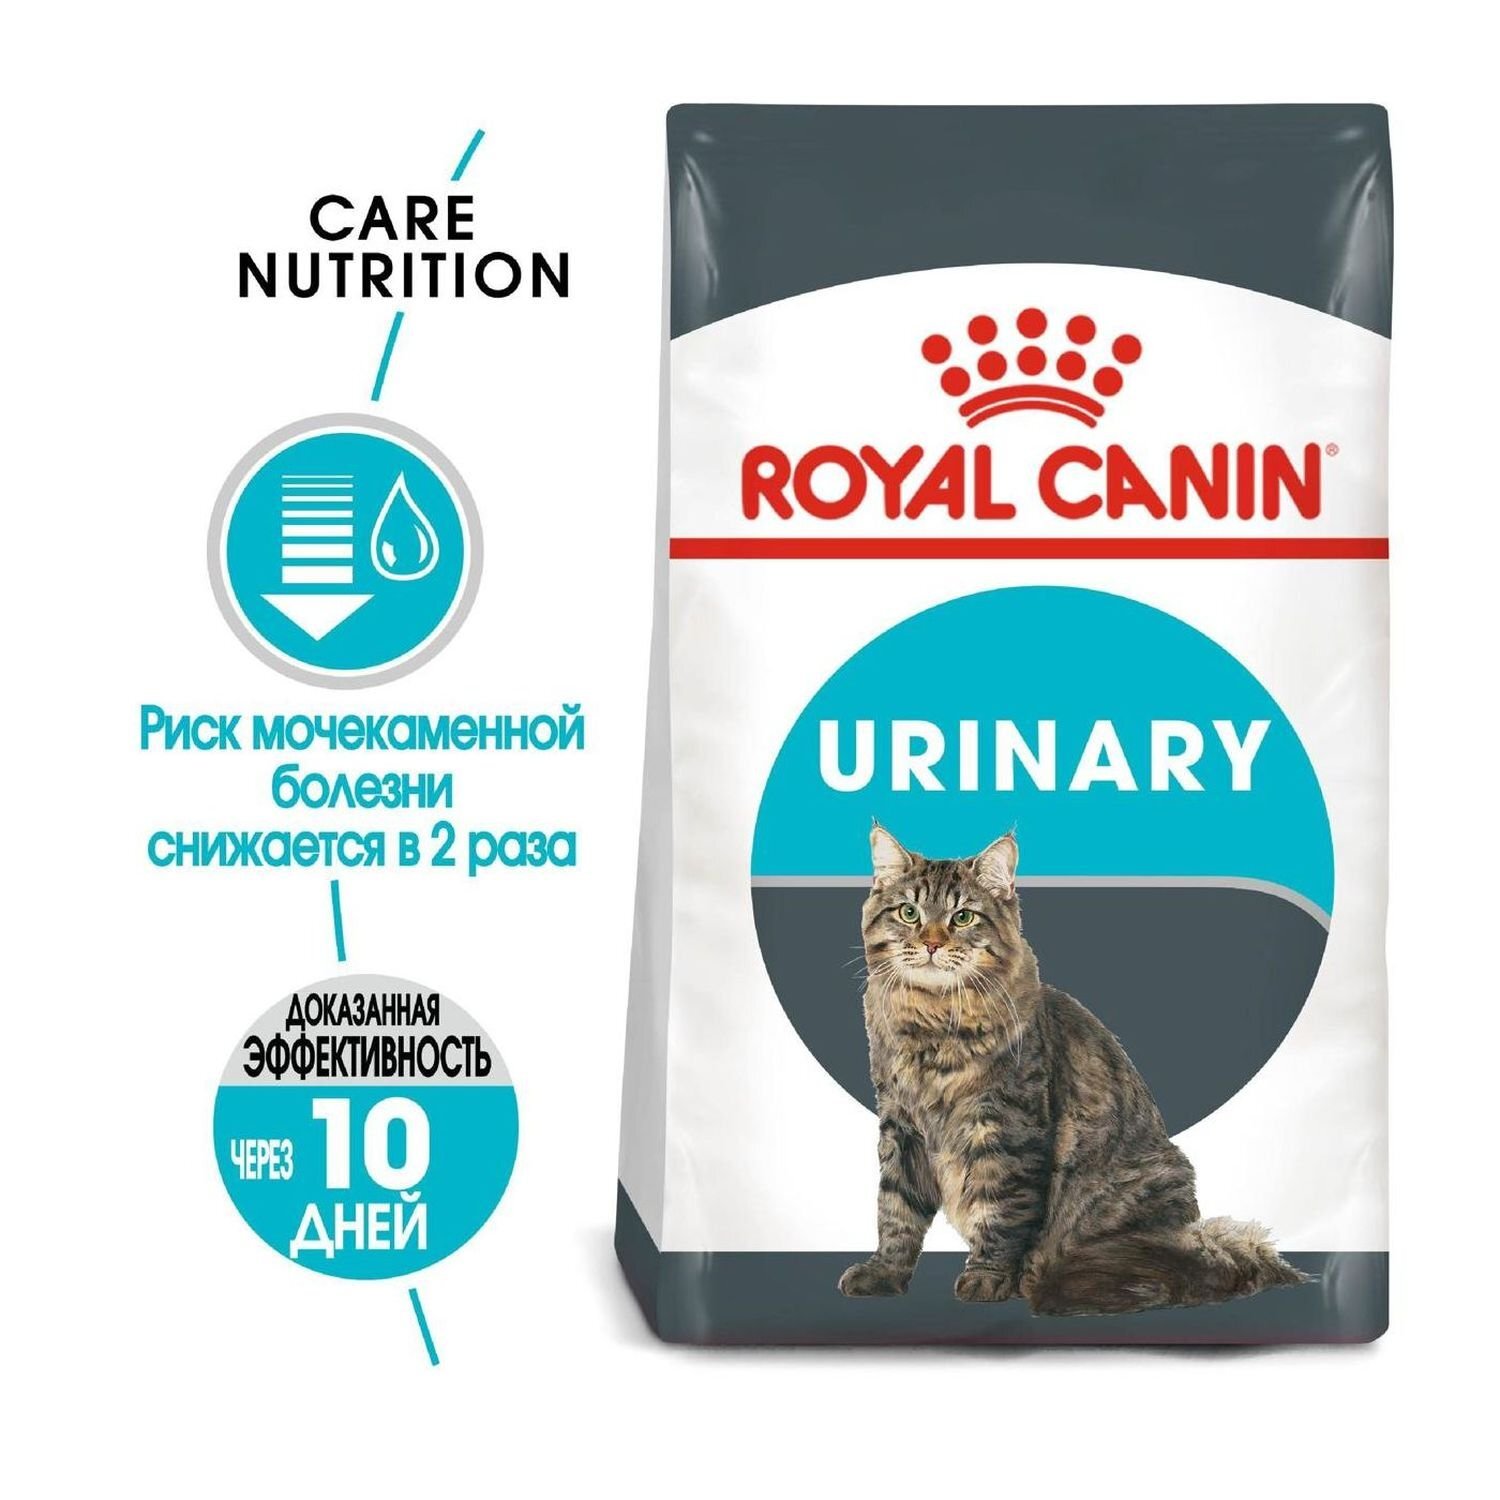 Уринари для кошек купить в спб. Royal Canin Digestive Care для кошек. Роял Канин Уринари профилактика. Роял Канин Urinary для кошек. Роял Канин Уринари для кошек профилактика мочекаменной.